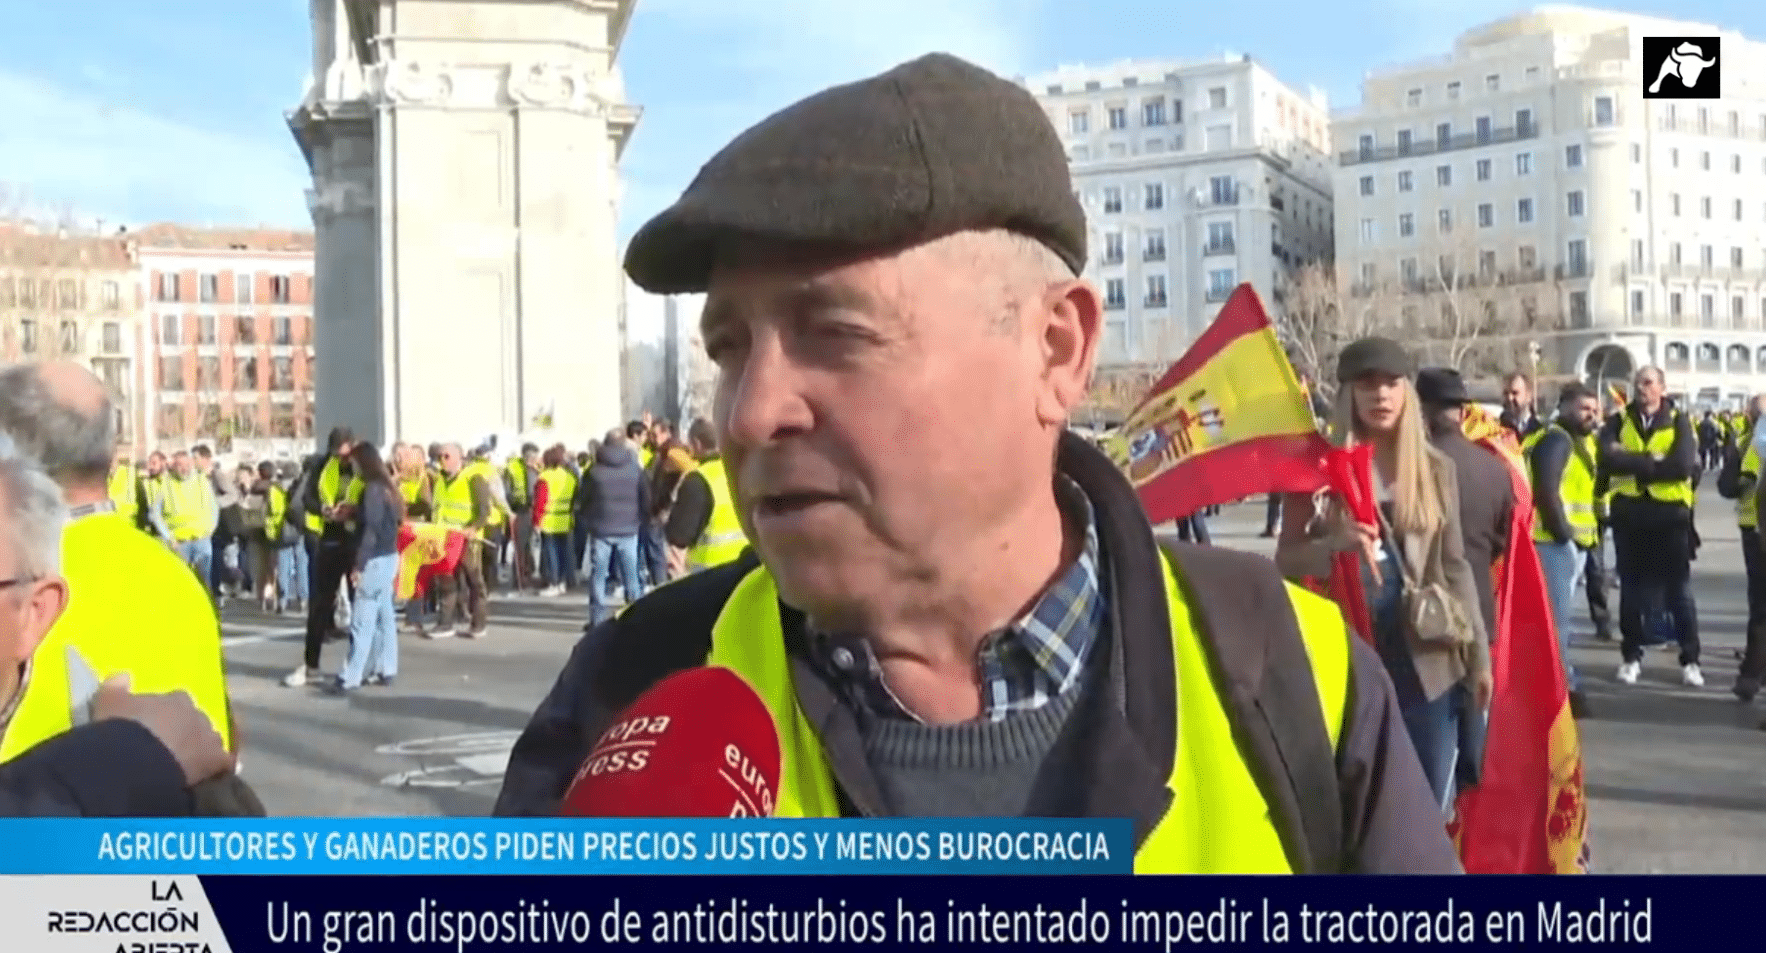 Cargas contra los agricultores en la masiva tractorada en Madrid